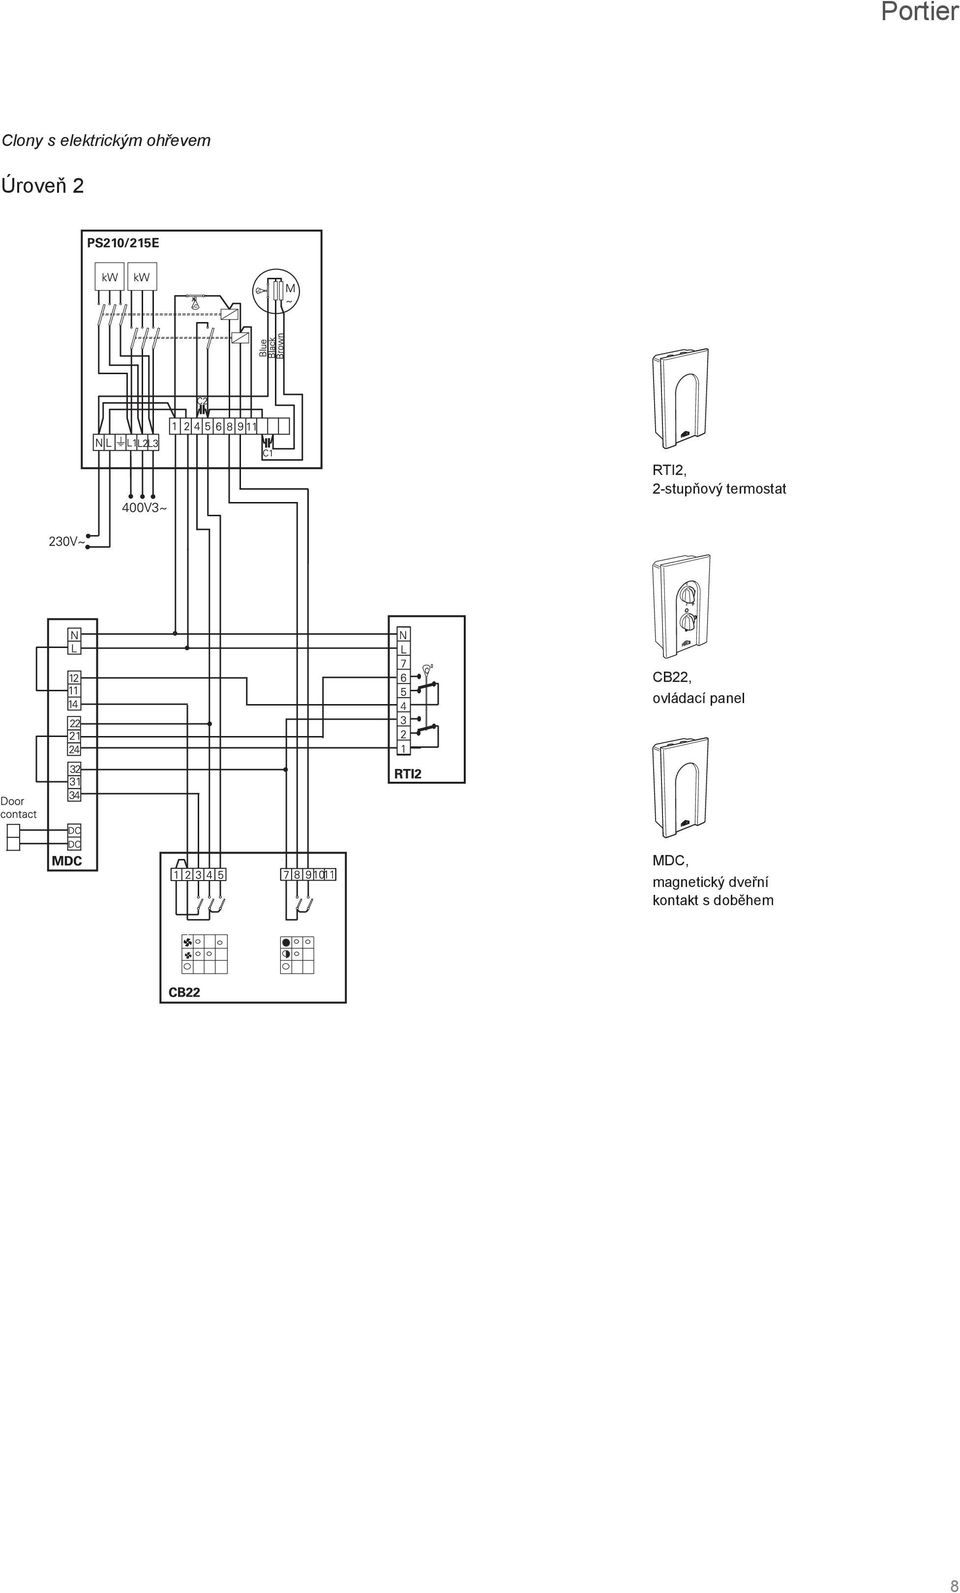 termostat CB22, ovládací panel